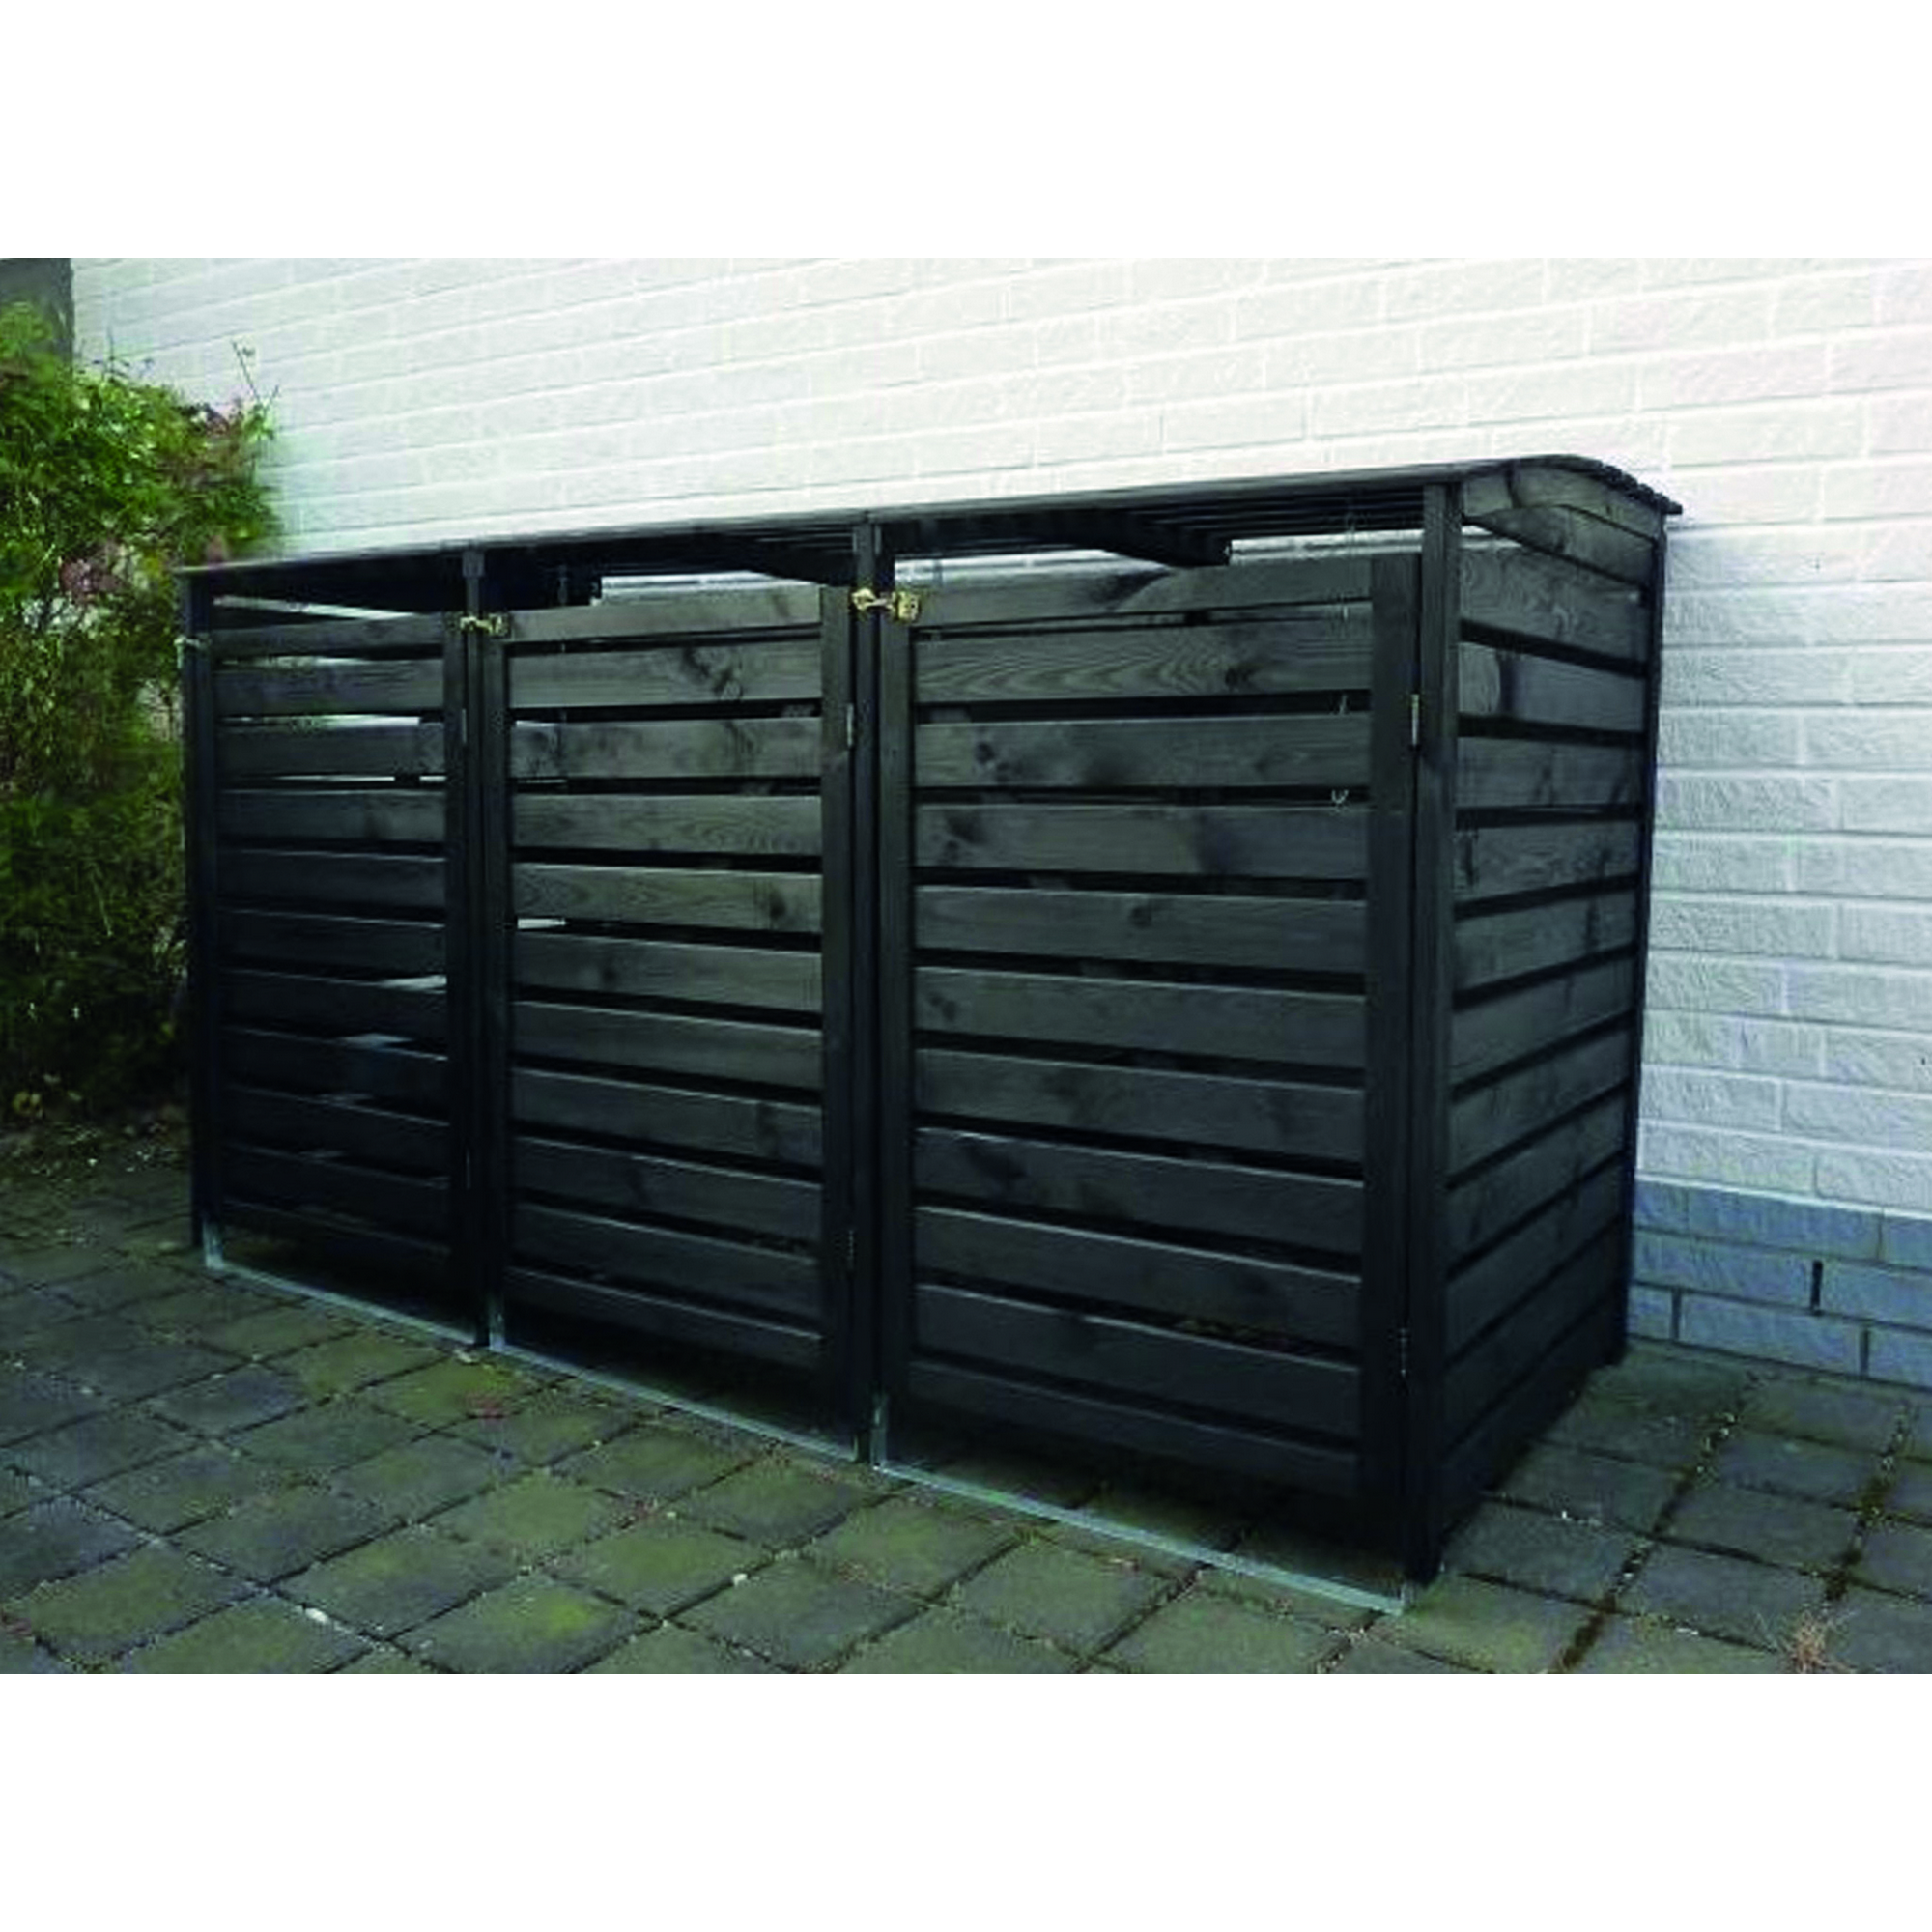 Mülltonnenbox 'Vario III' für 3 Tonnen anthrazit 219 x 122 x 92 cm + product picture